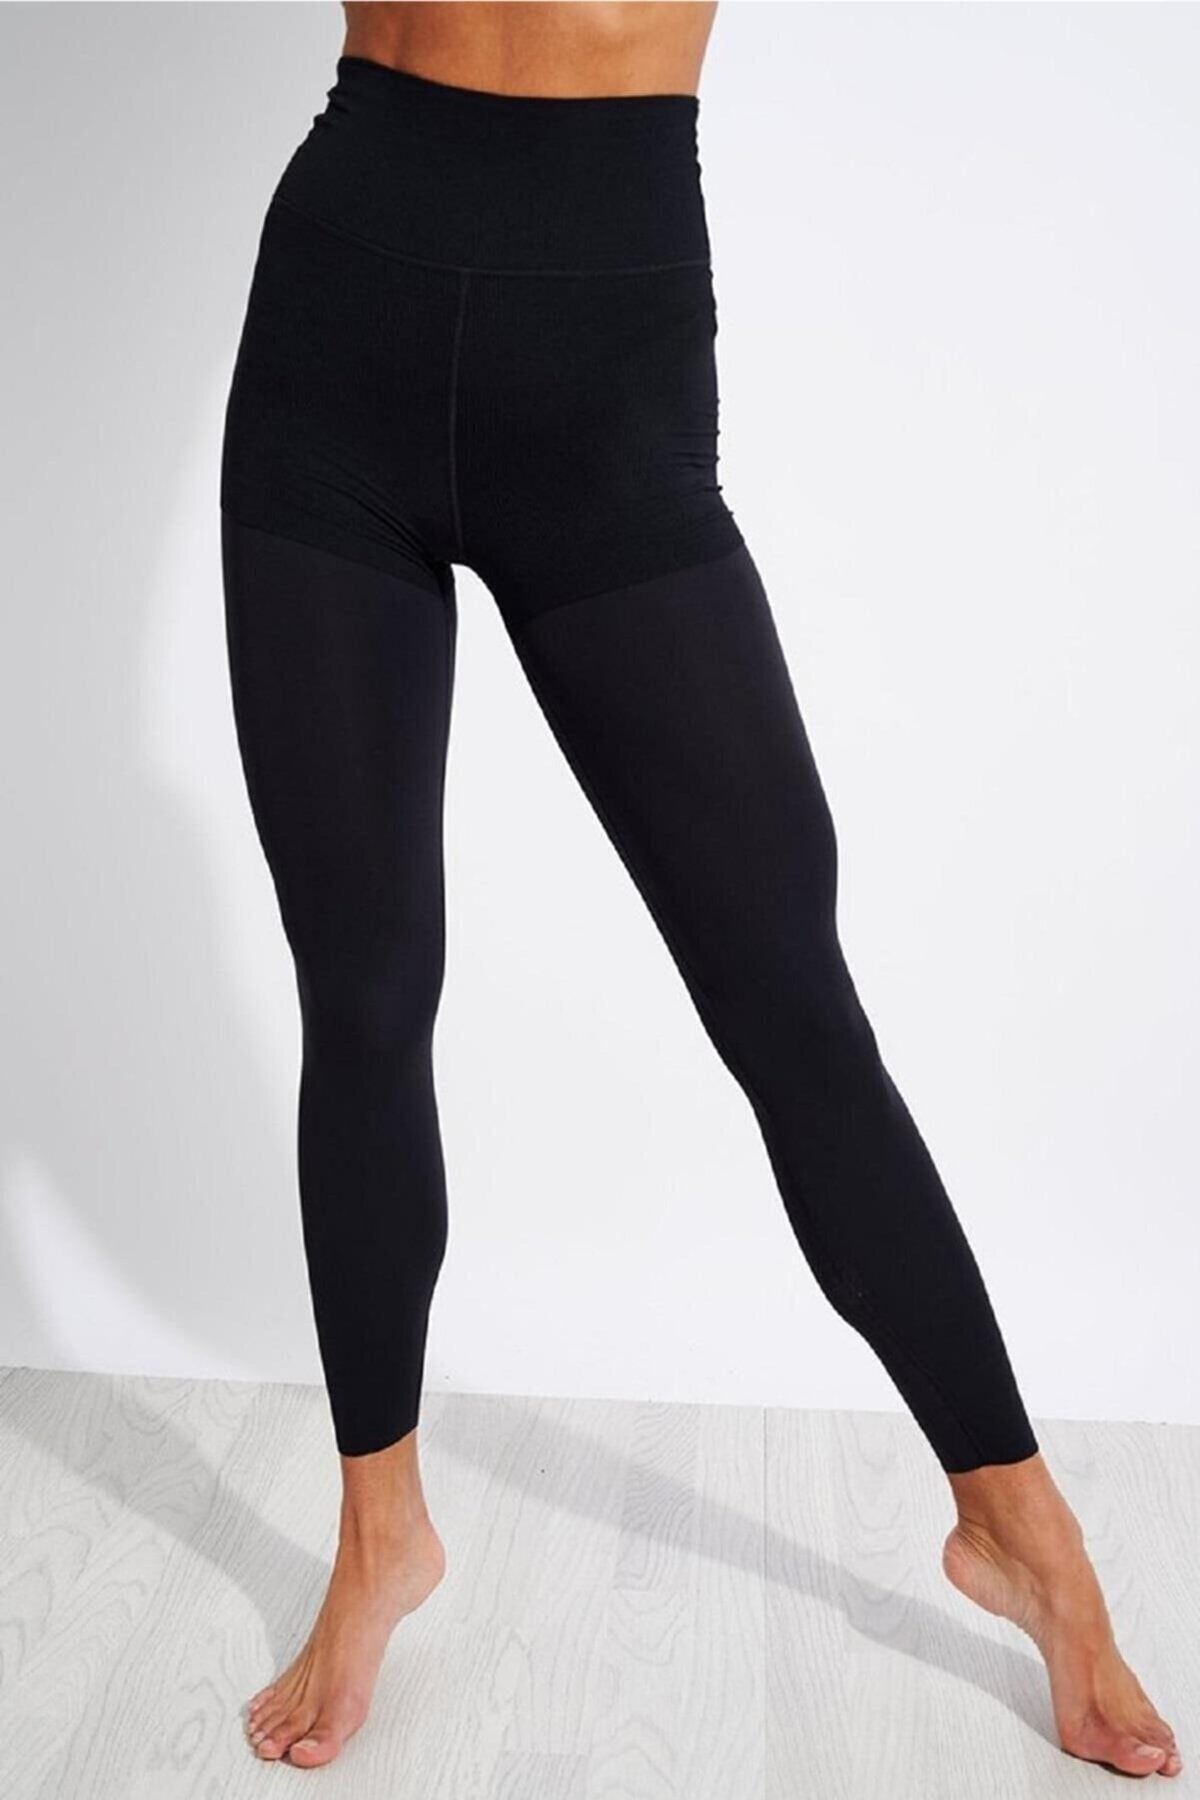 Legging Nike Yoga Core Collection 7/8 Tight Preta - Compre Agora